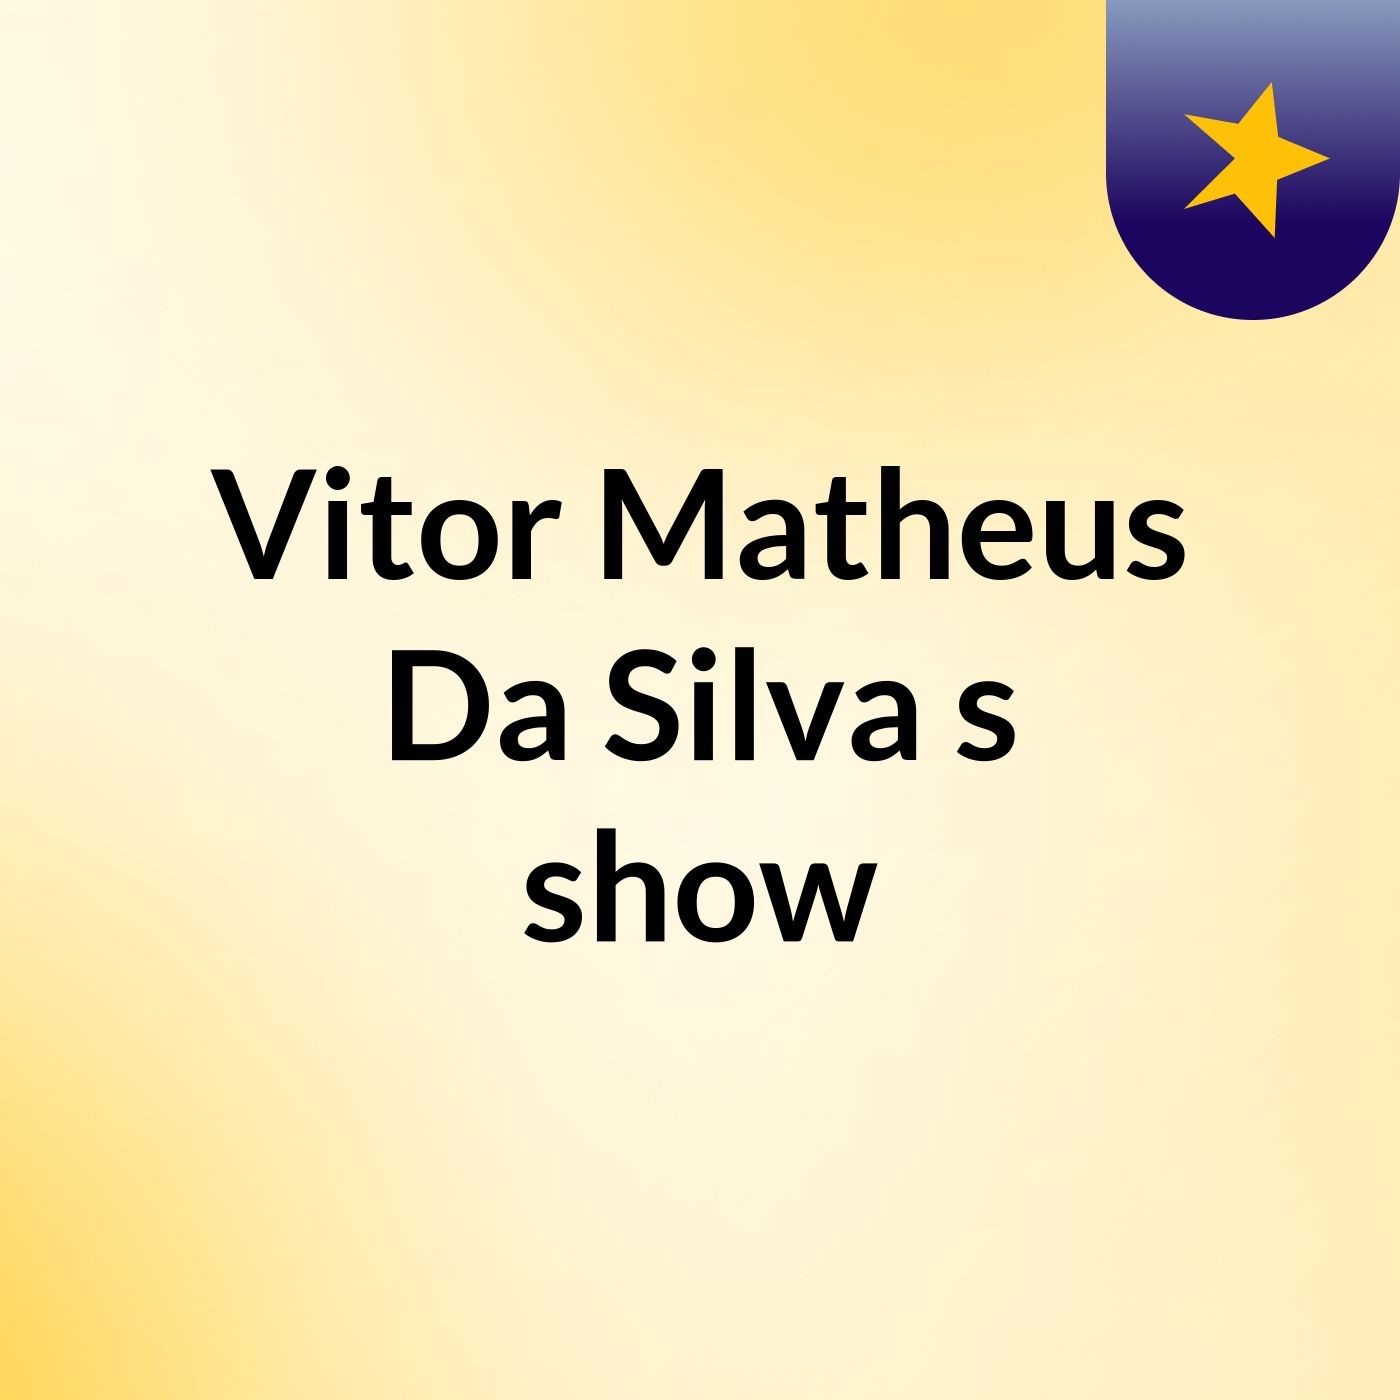 Vitor Matheus Da Silva's show